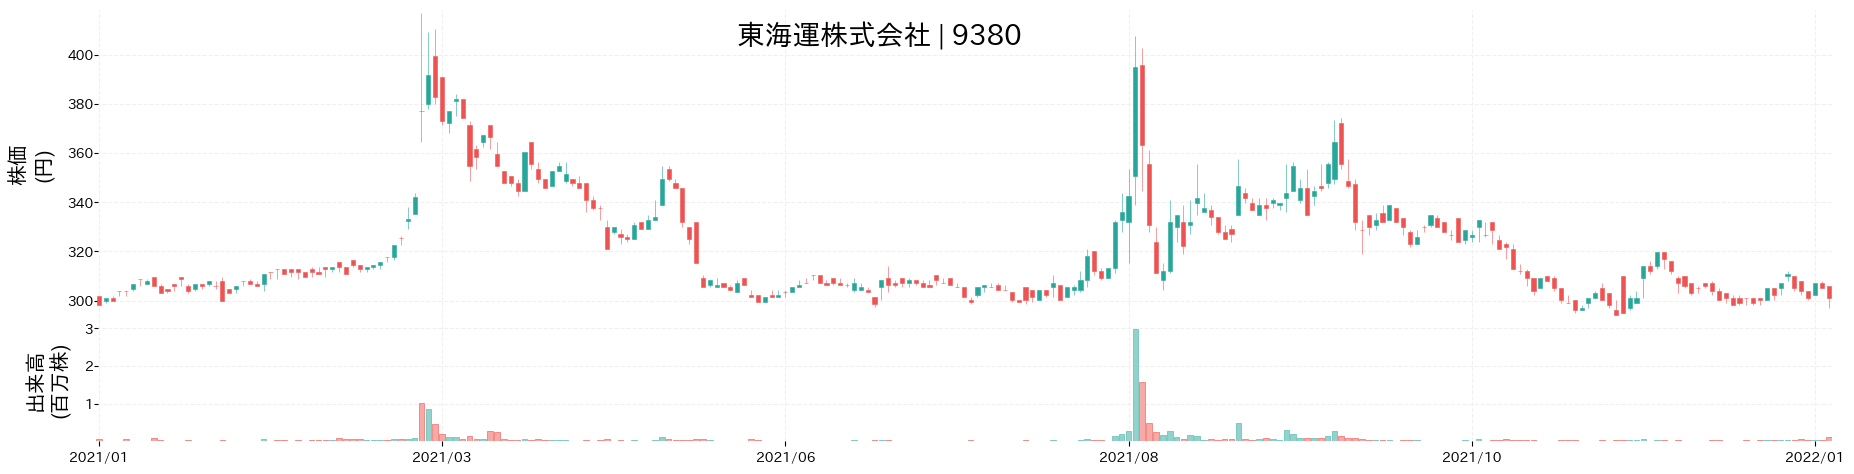 東 海運の株価推移(2021)